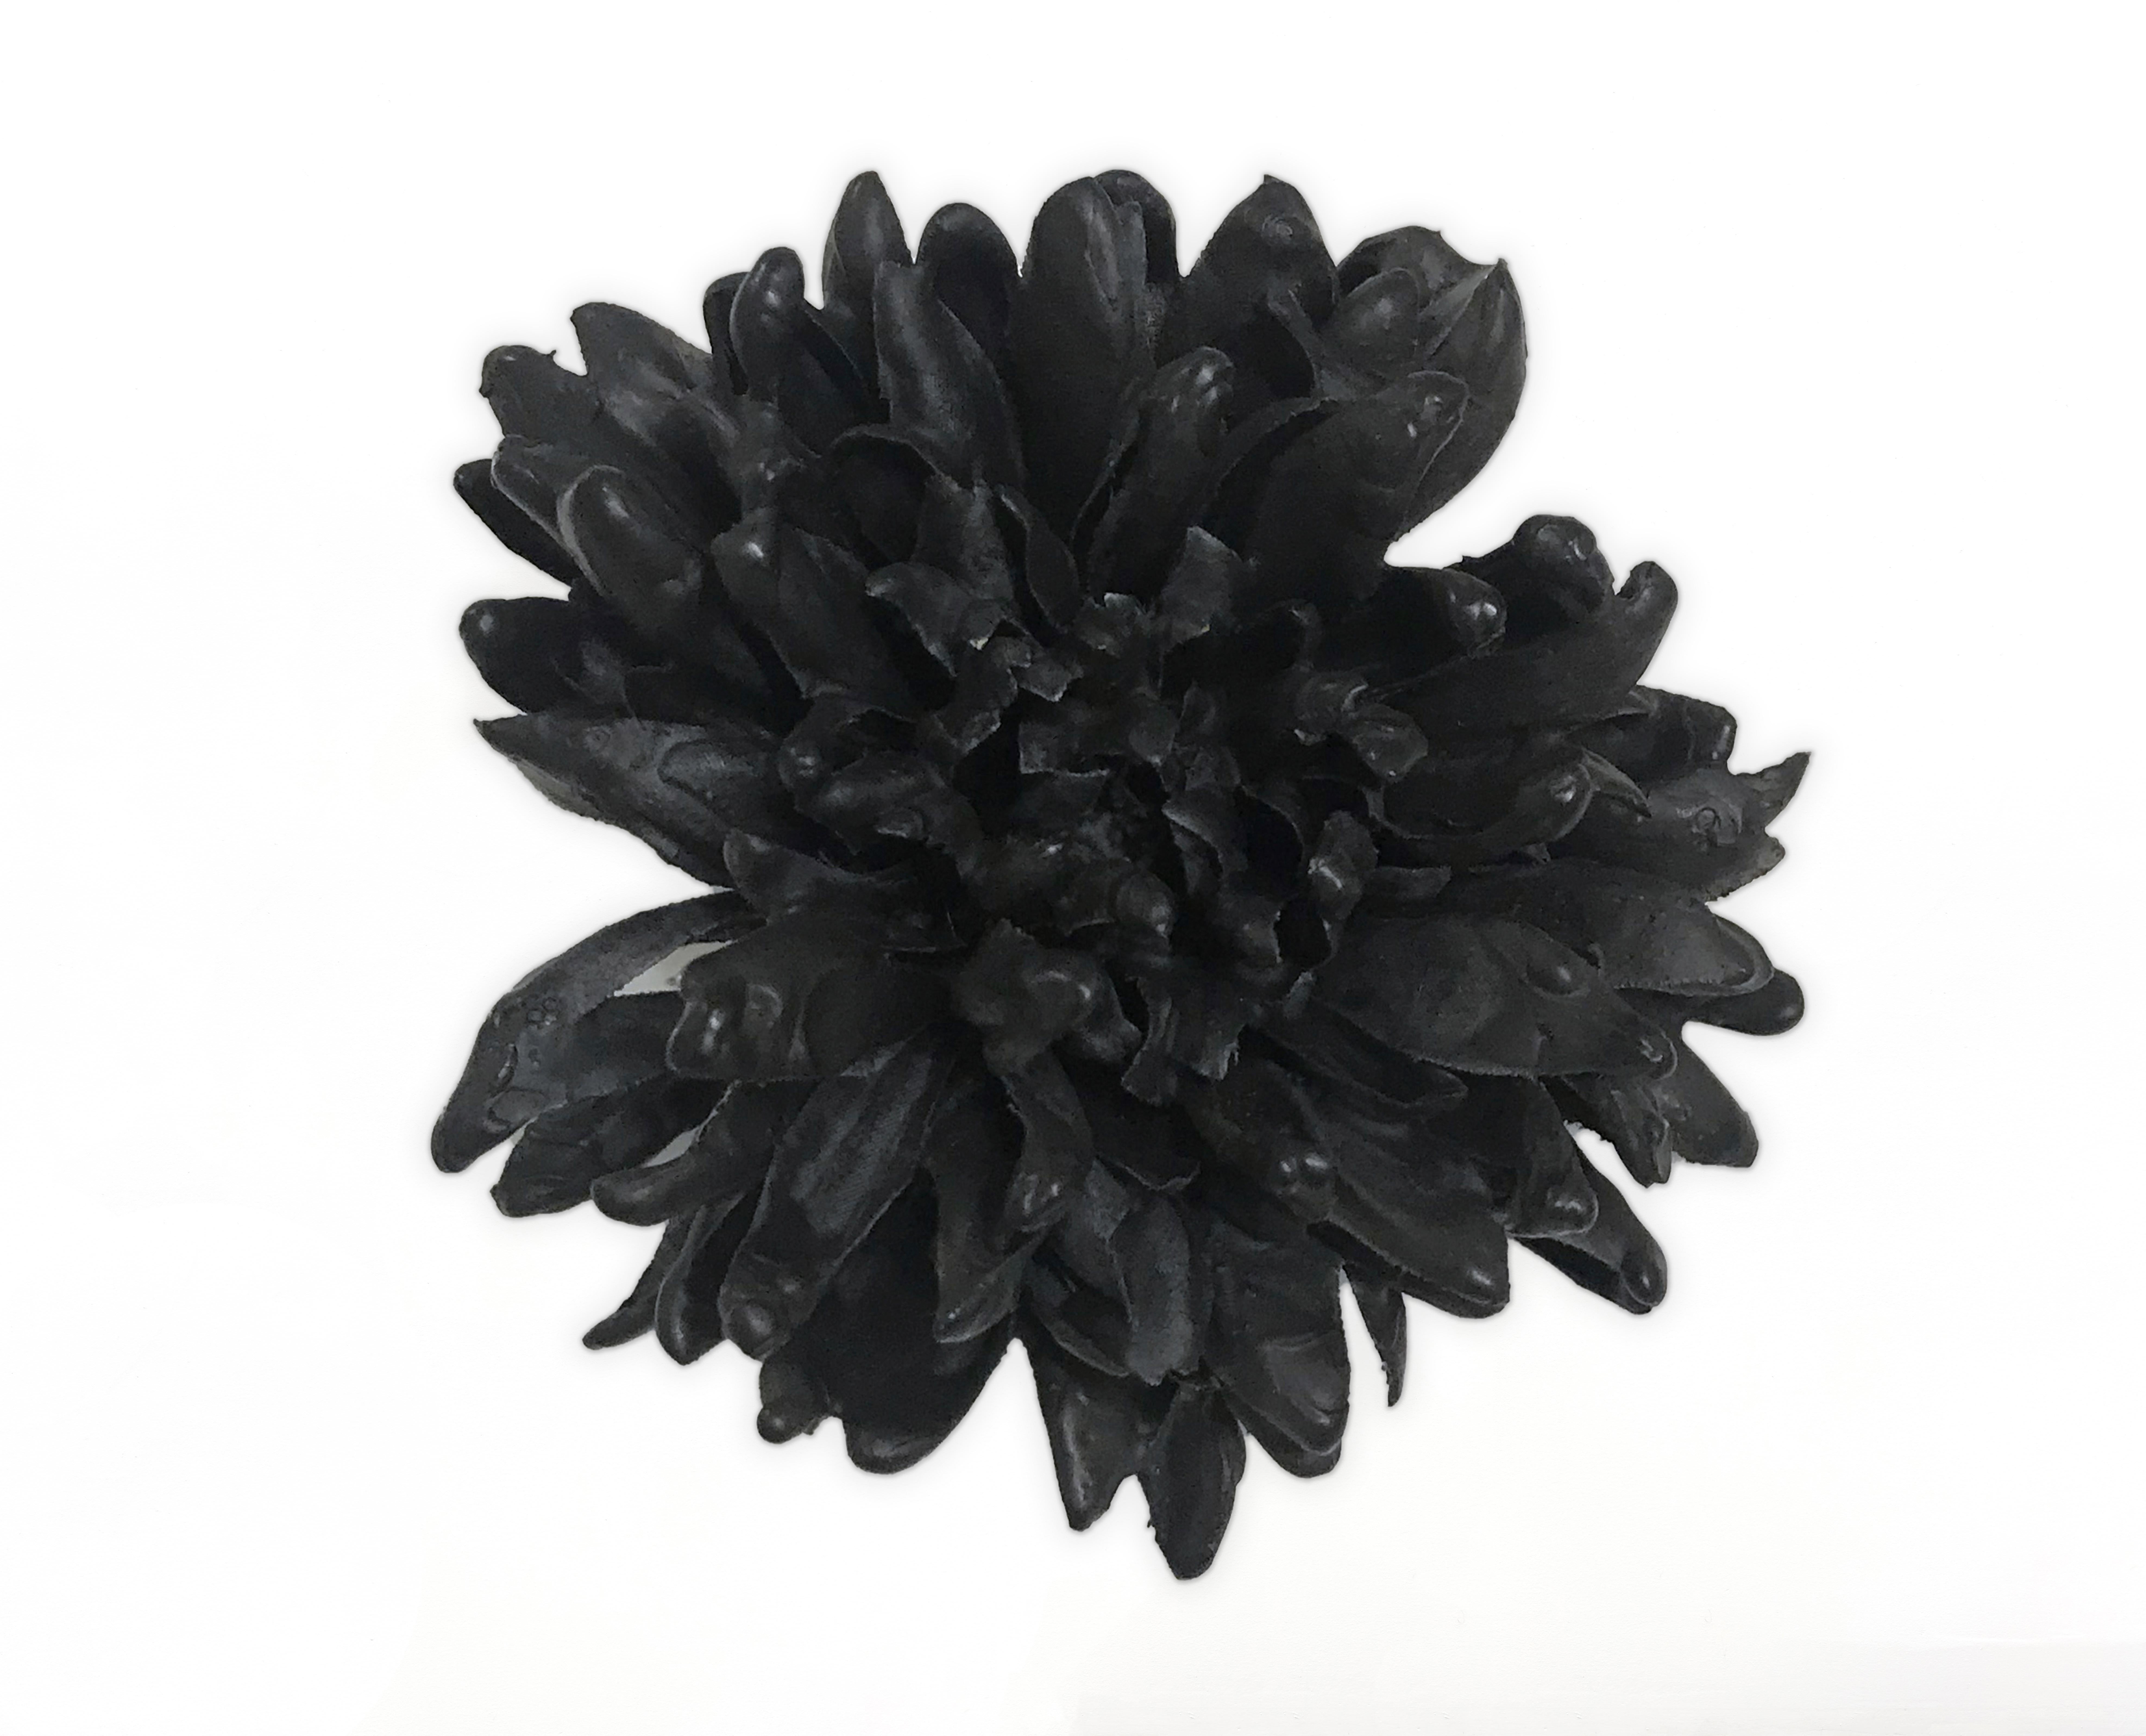 Petah Coyne - Wax Flower, 2005